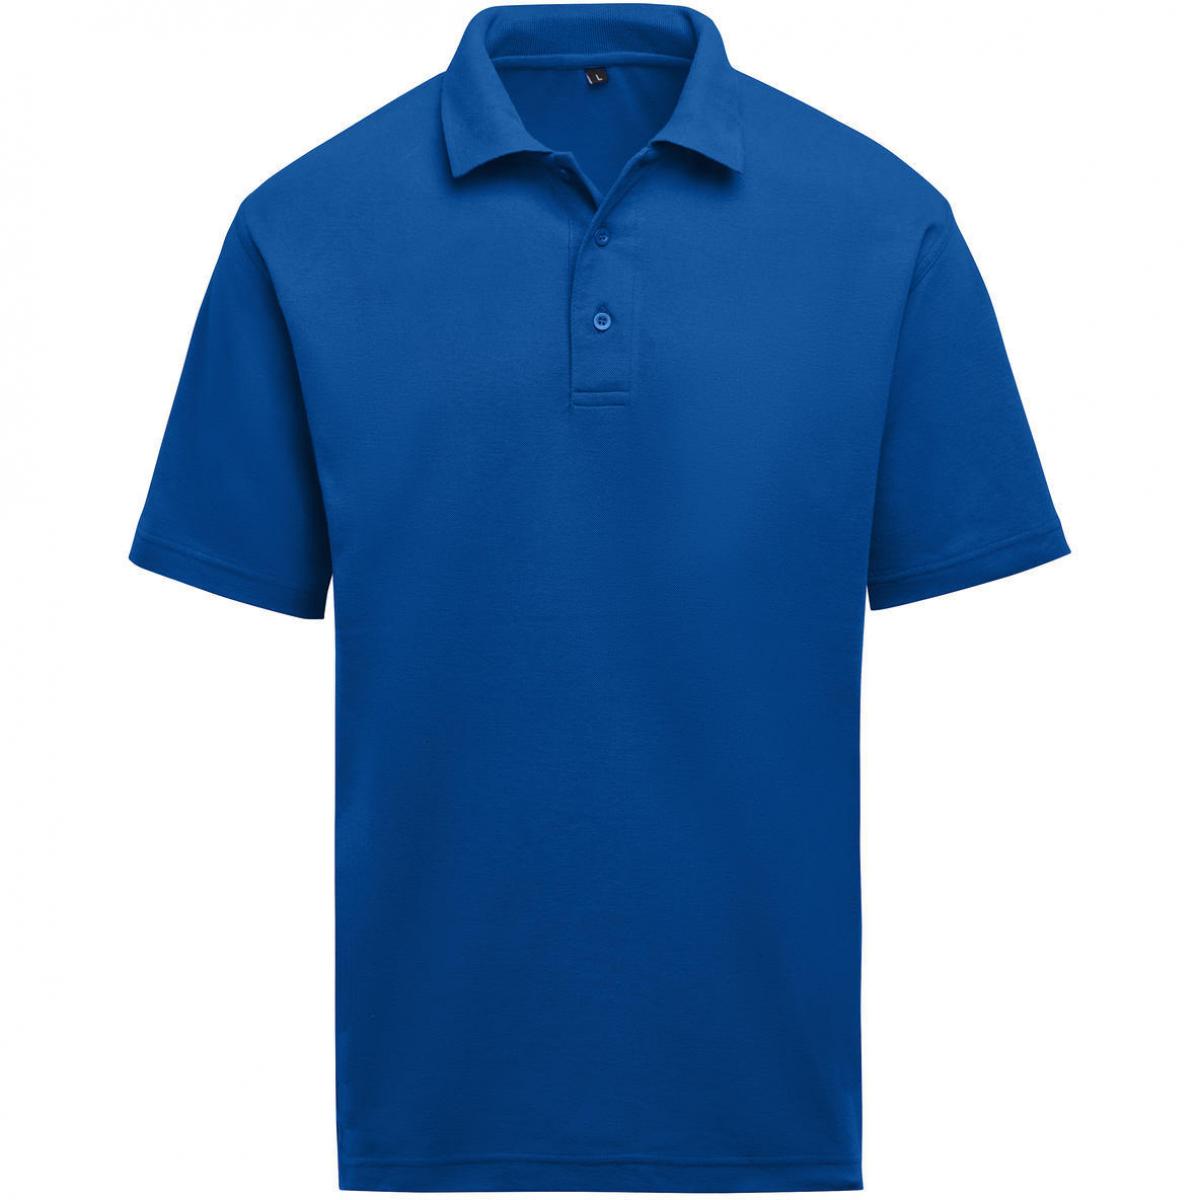 Hersteller: SG Herstellernummer: SGE501 Artikelbezeichnung: Unisex Poloshirt - Workwear - 60°C waschbar Farbe: Royal